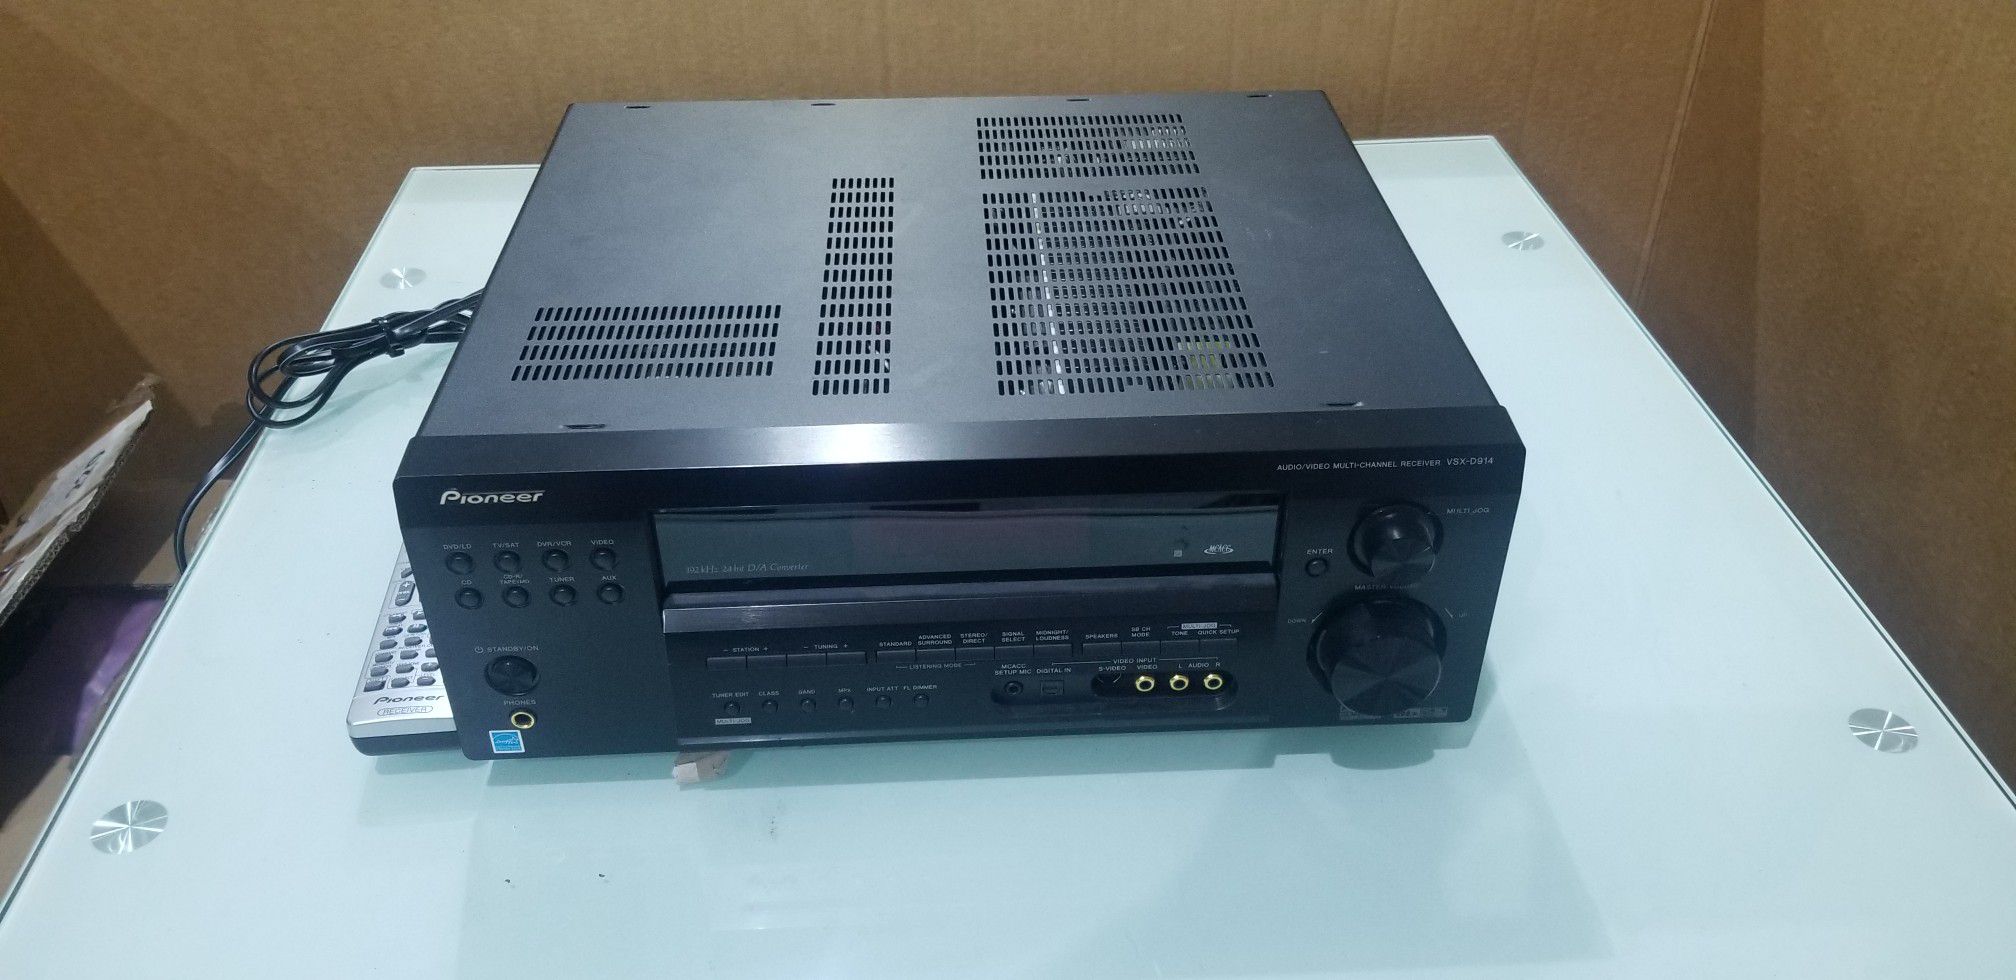 Pioneer VSX-D914 Receiver/Amplifier